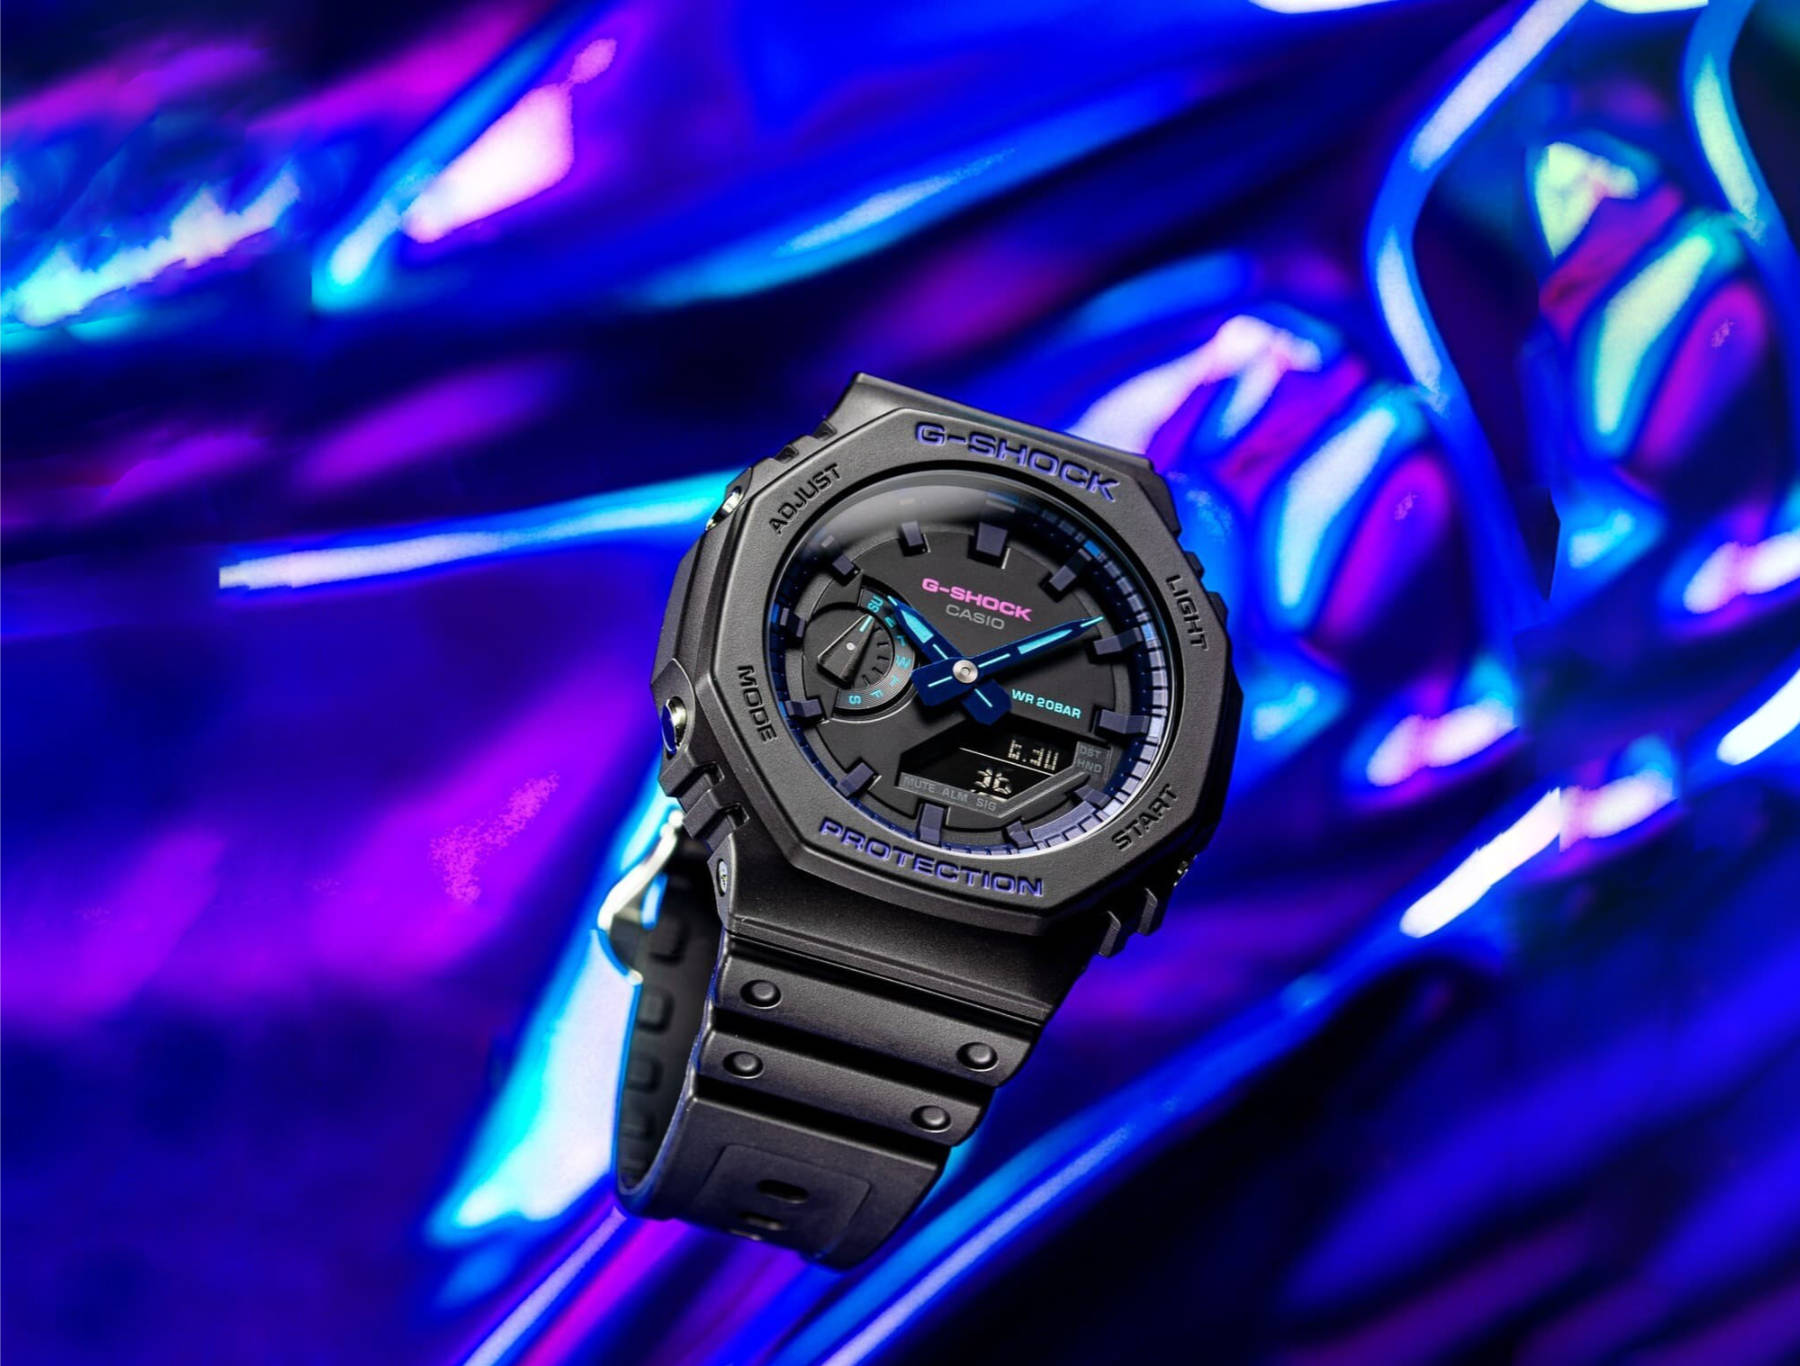 Casio presents its new GA2100 Virtual Blue “CasiOak” G-Shock